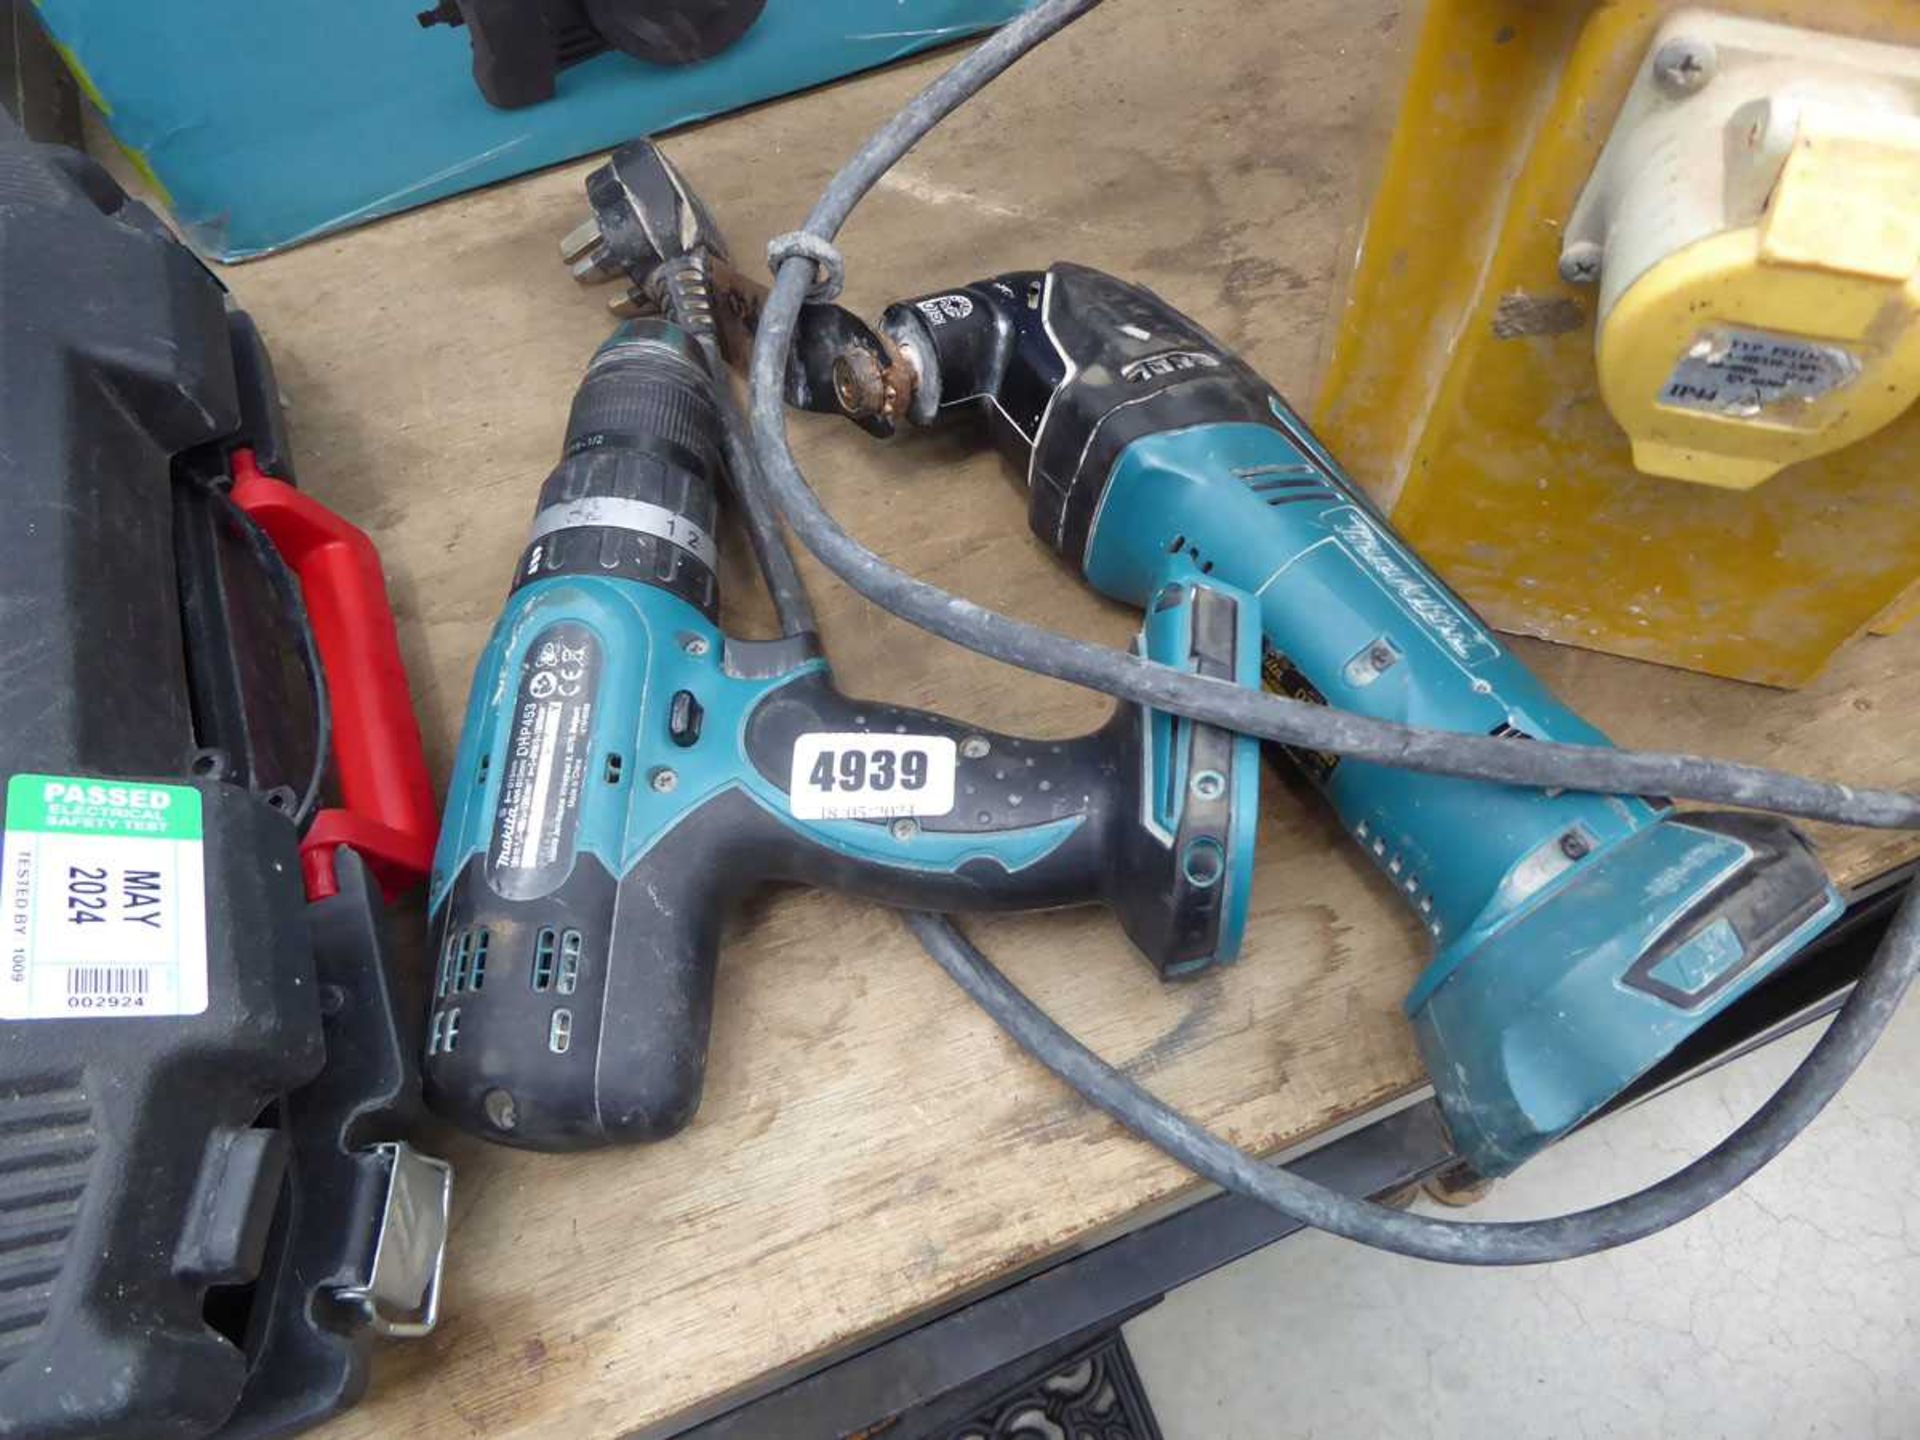 Makita multi tool and Makita drill, no batteries, no charger